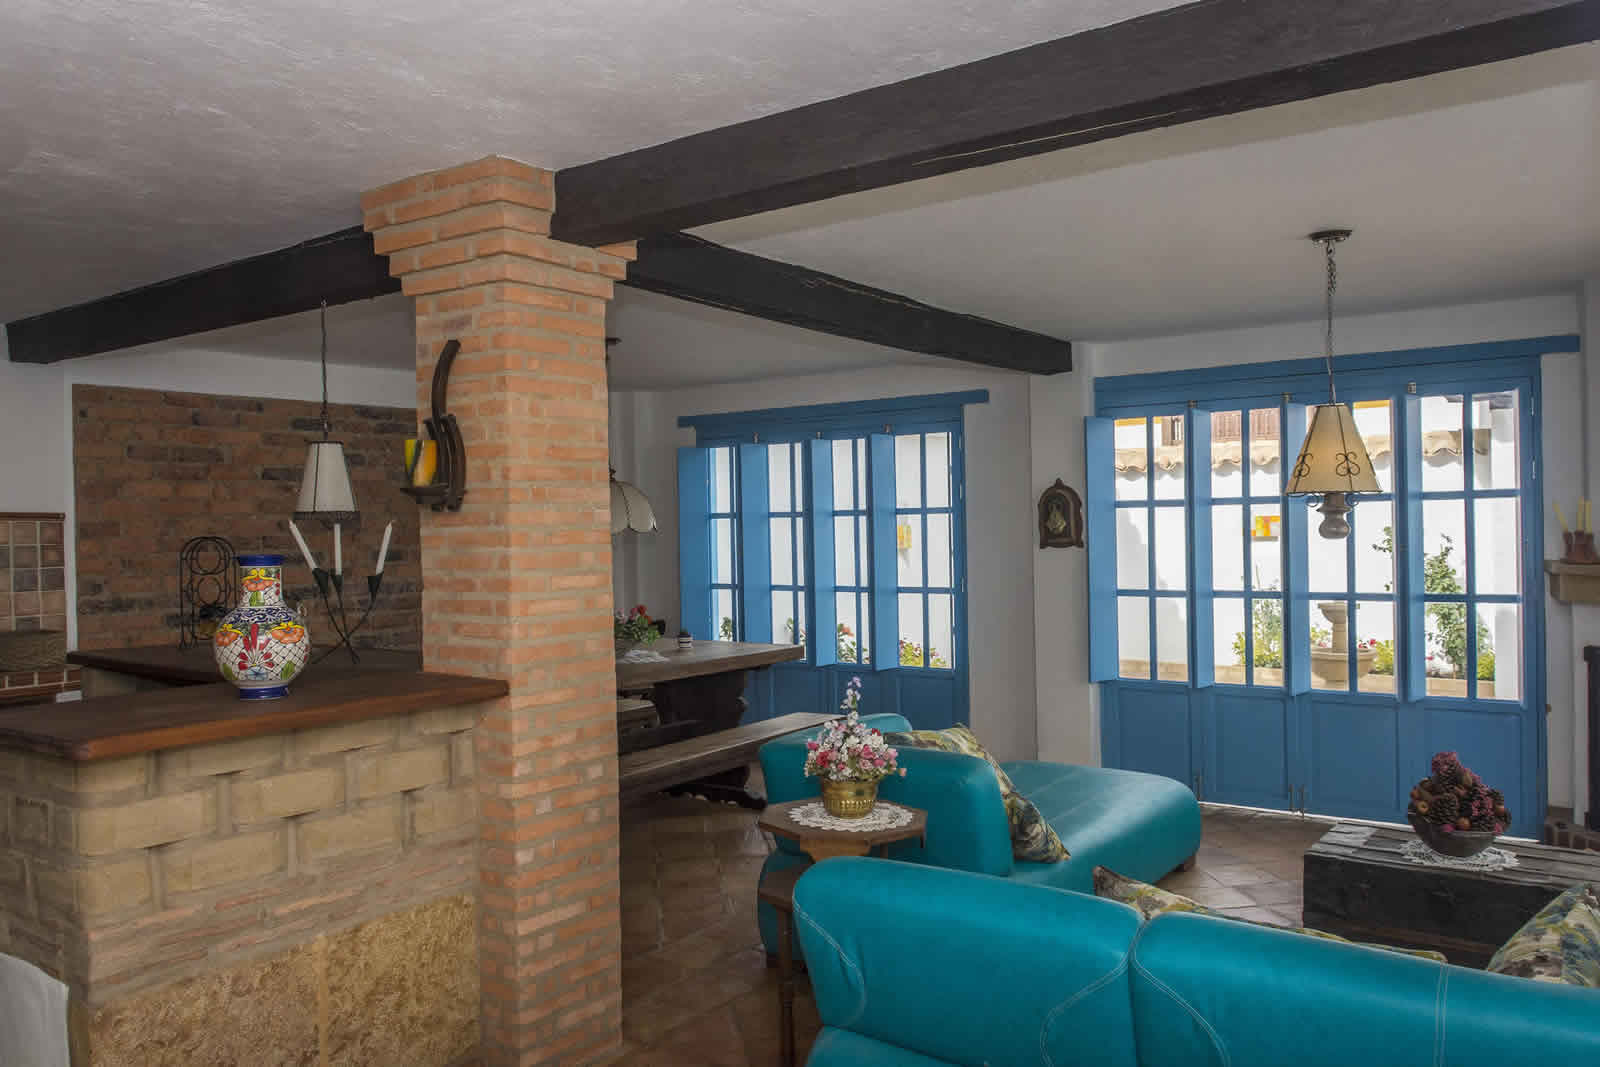 Alquiler Casa Azul en Villa de Leyva sala